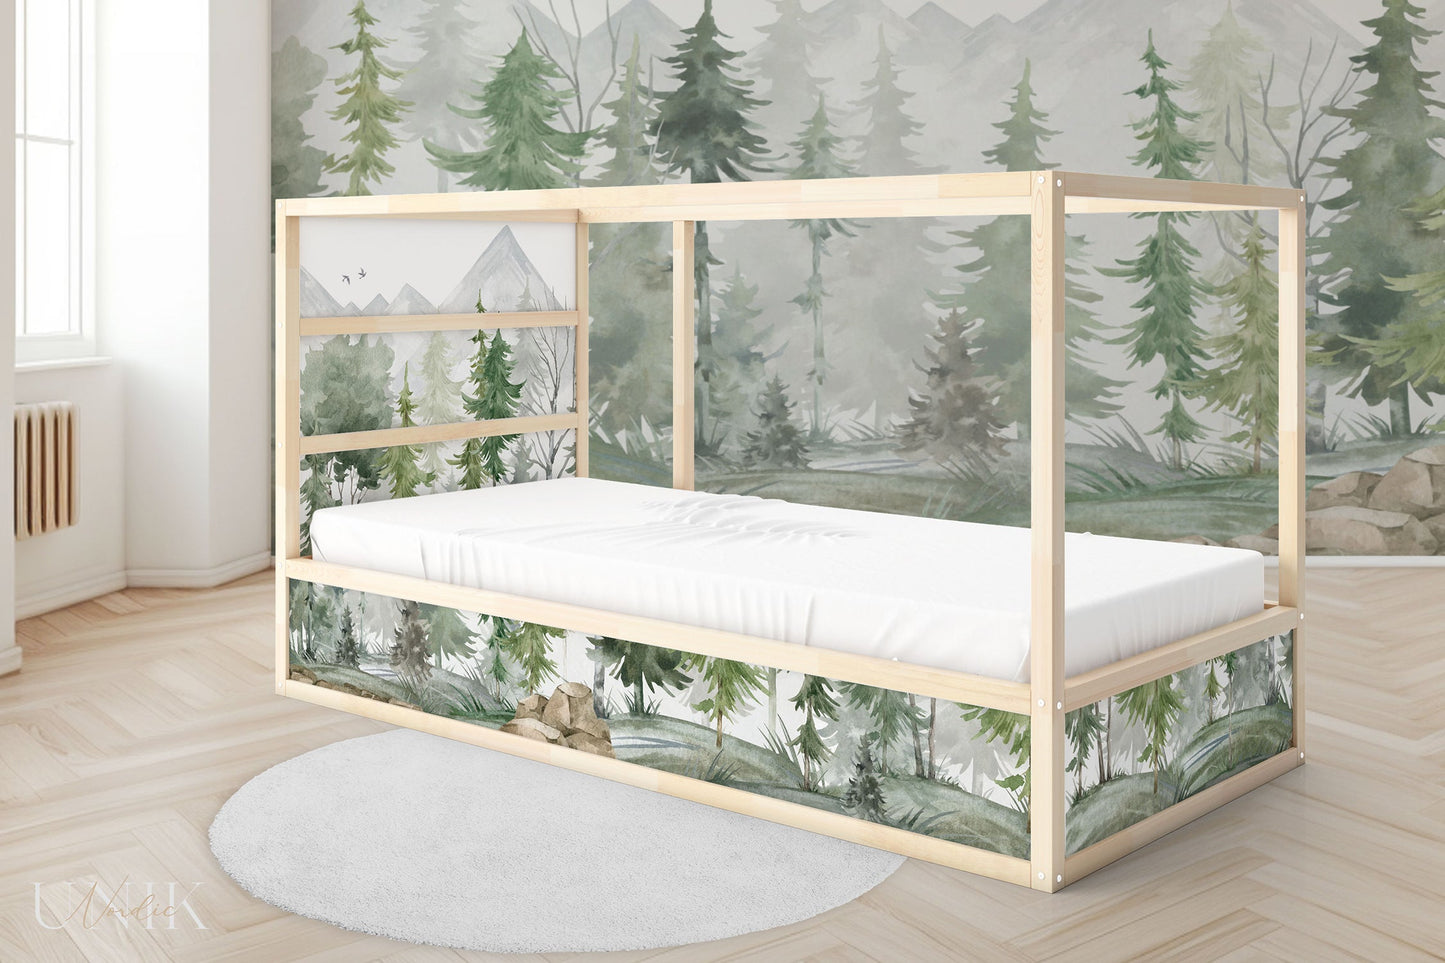 IKEA Kura Bed Sticker Set - Fir Forest Watercolor